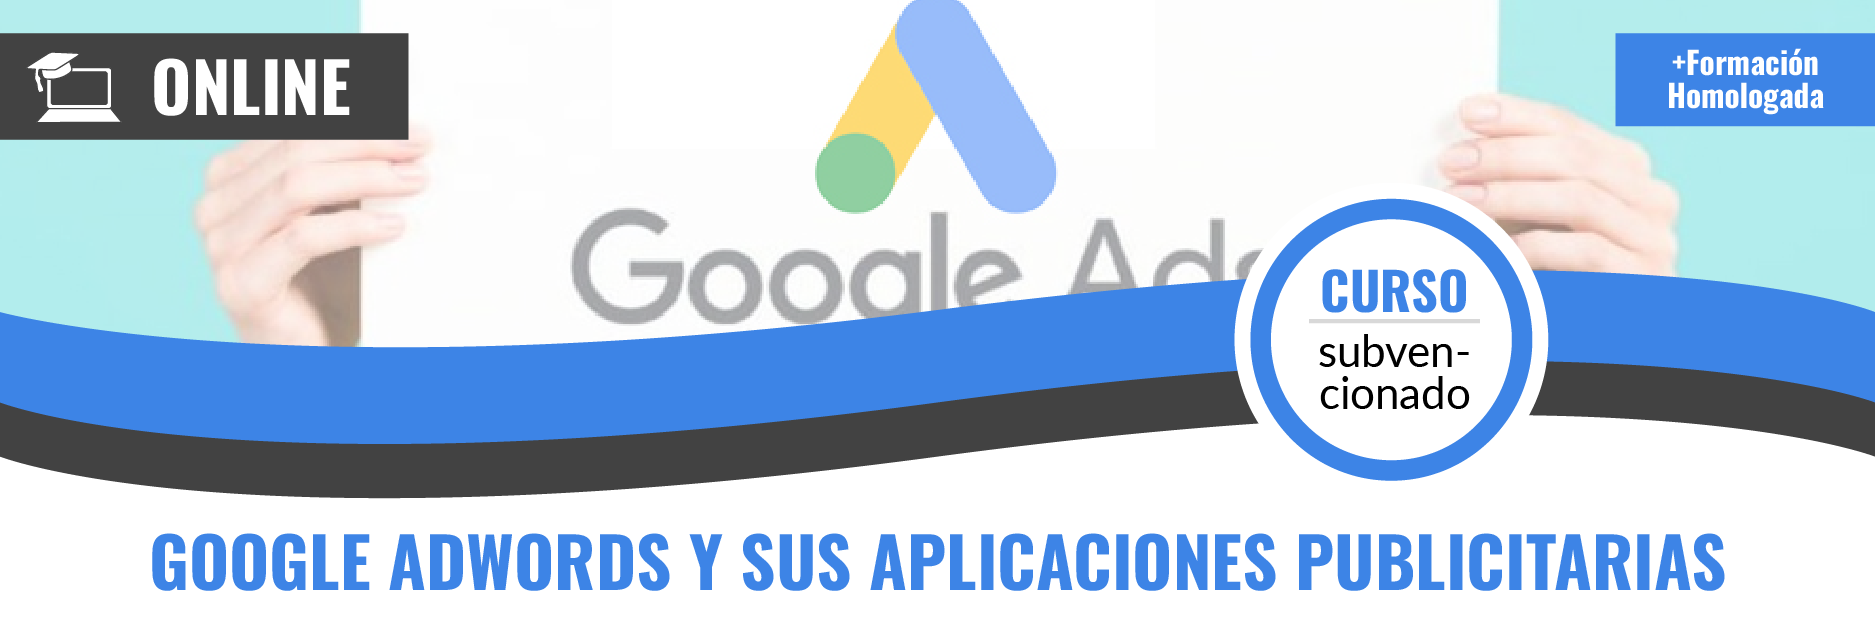 Banners_22-23-online_Google Adwords y sus aplicaciones publicitarias